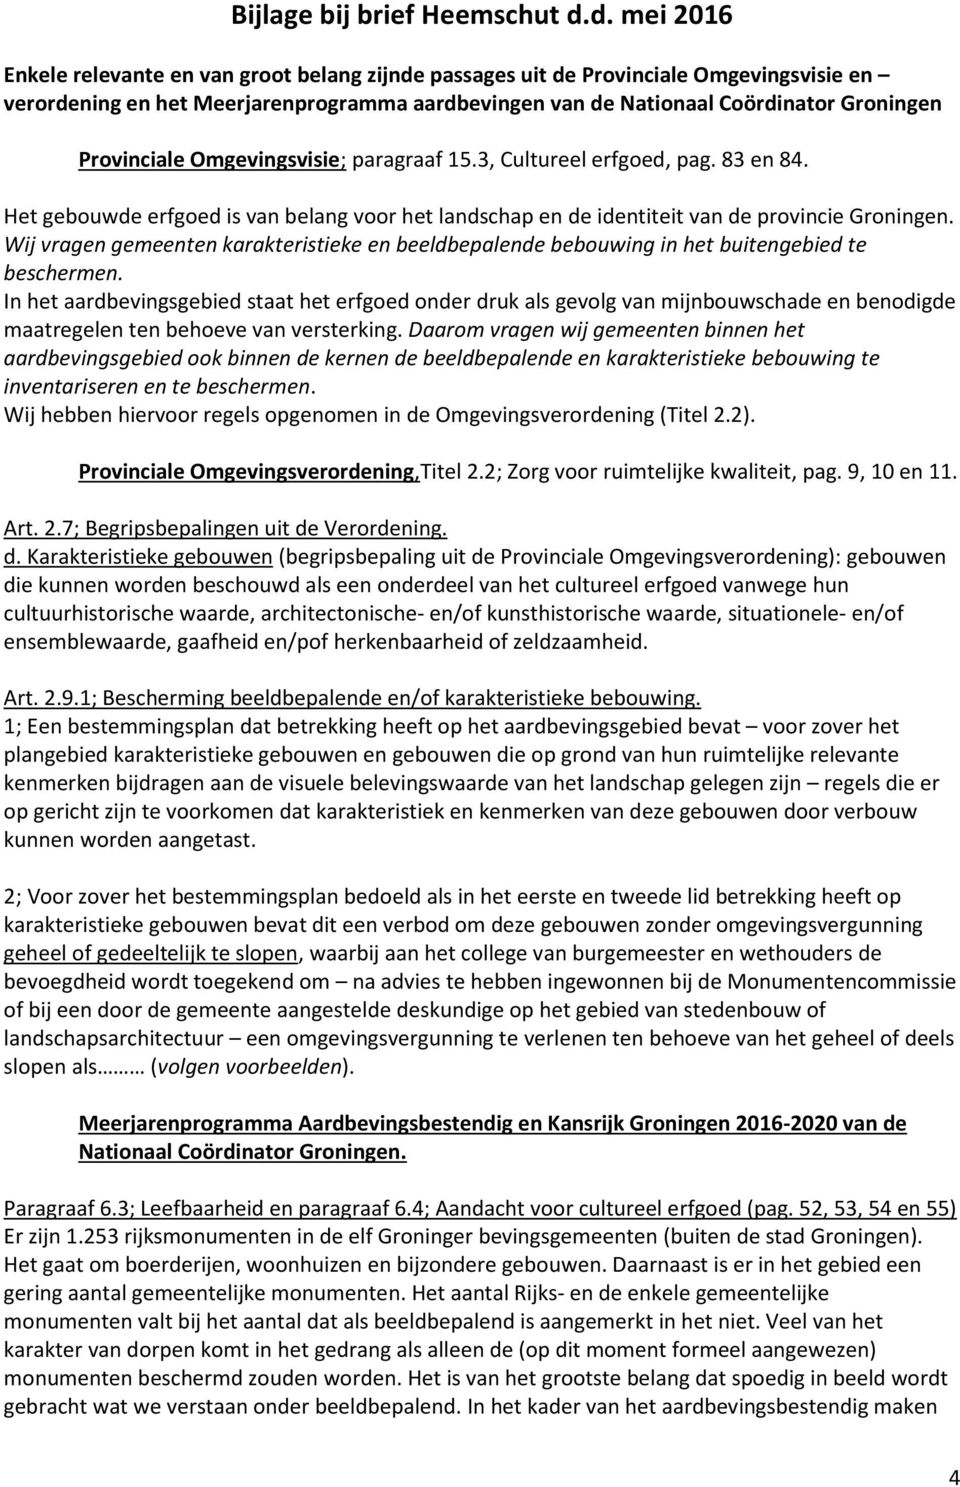 Provinciale Omgevingsvisie; paragraaf 15.3, Cultureel erfgoed, pag. 83 en 84. Het gebouwde erfgoed is van belang voor het landschap en de identiteit van de provincie Groningen.